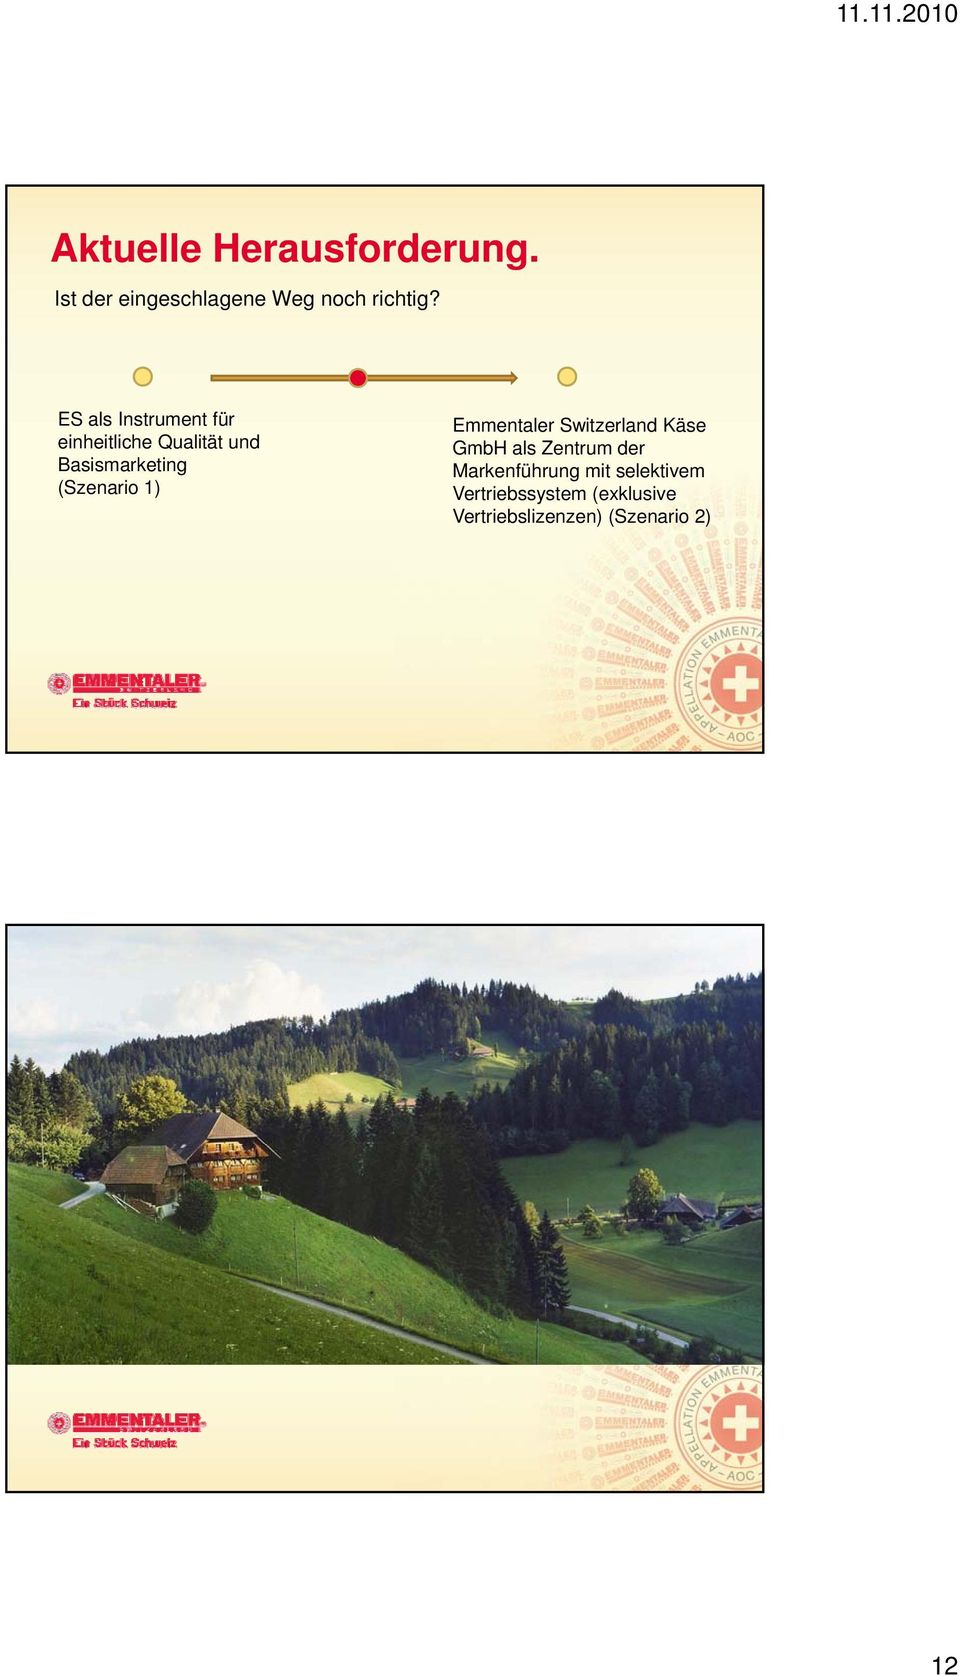 (Szenario 1) Emmentaler Switzerland Käse GmbH als Zentrum der